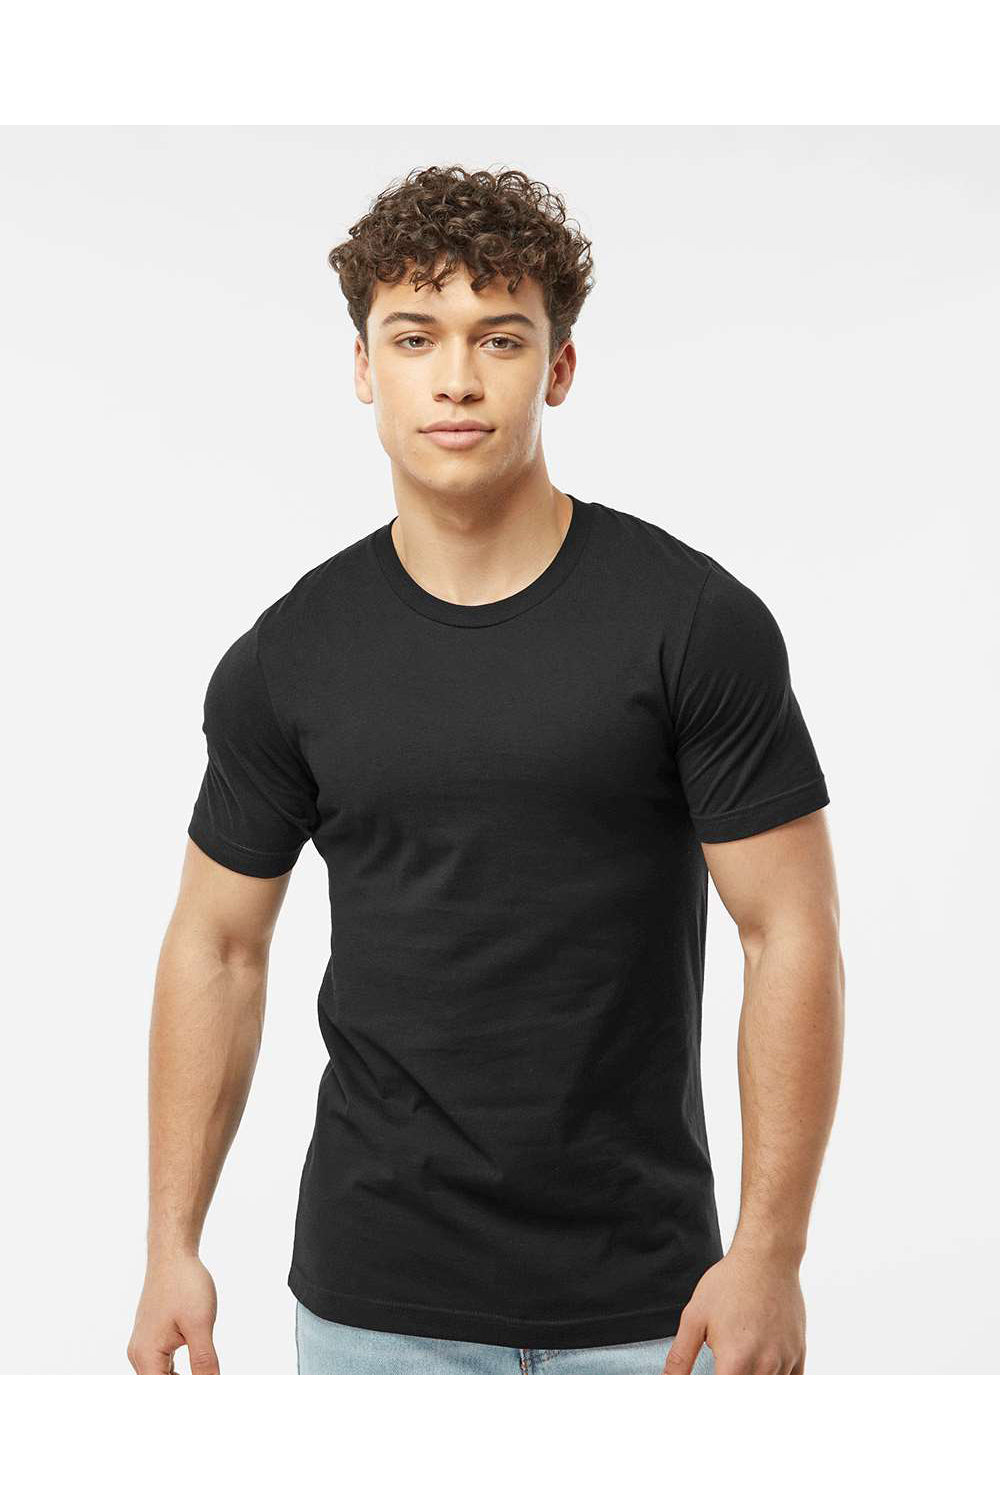 Tultex 502 Mens Premium Short Sleeve Crewneck T-Shirt Black Model Front